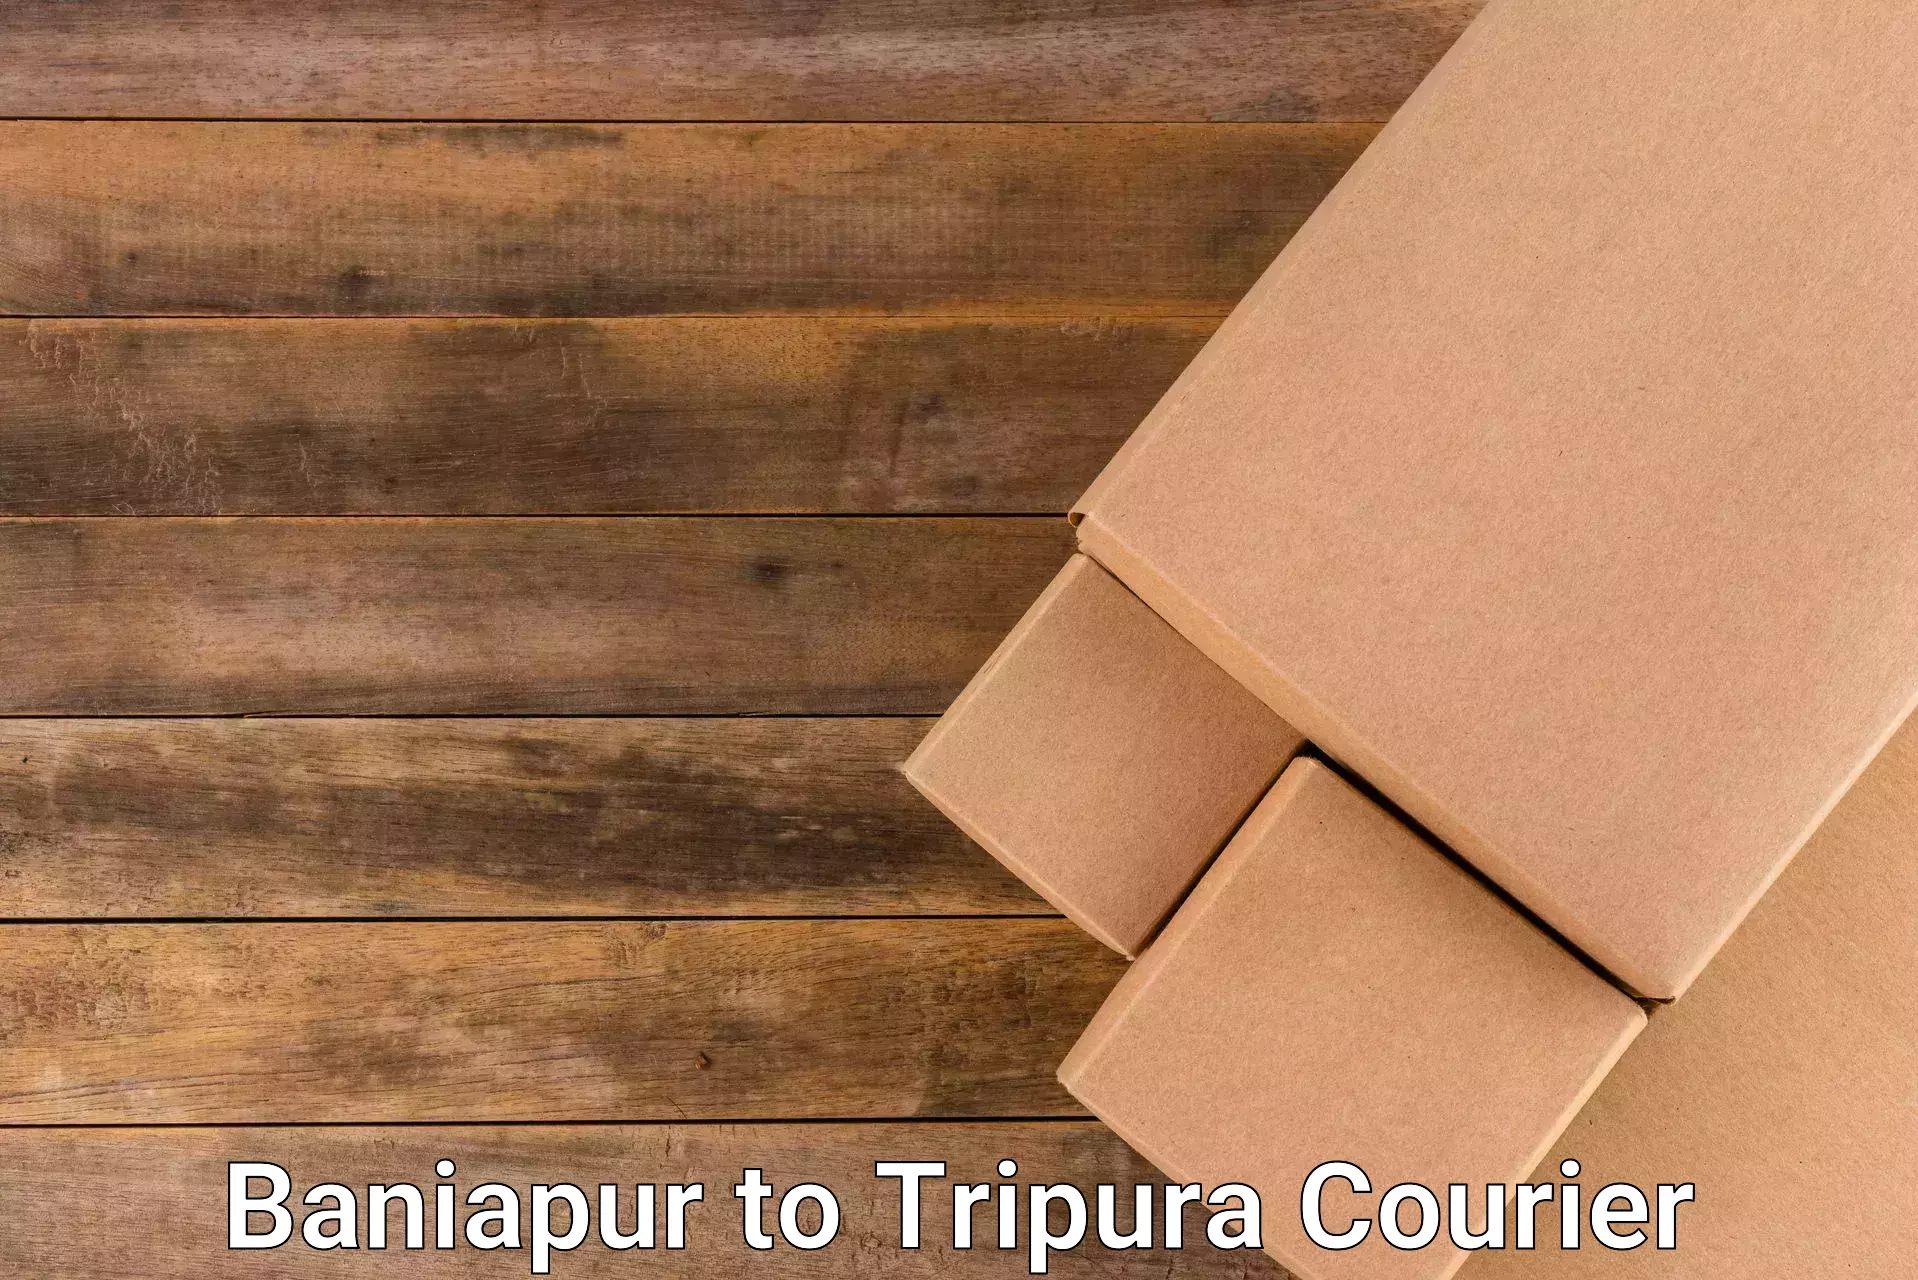 Express package handling in Baniapur to Tripura